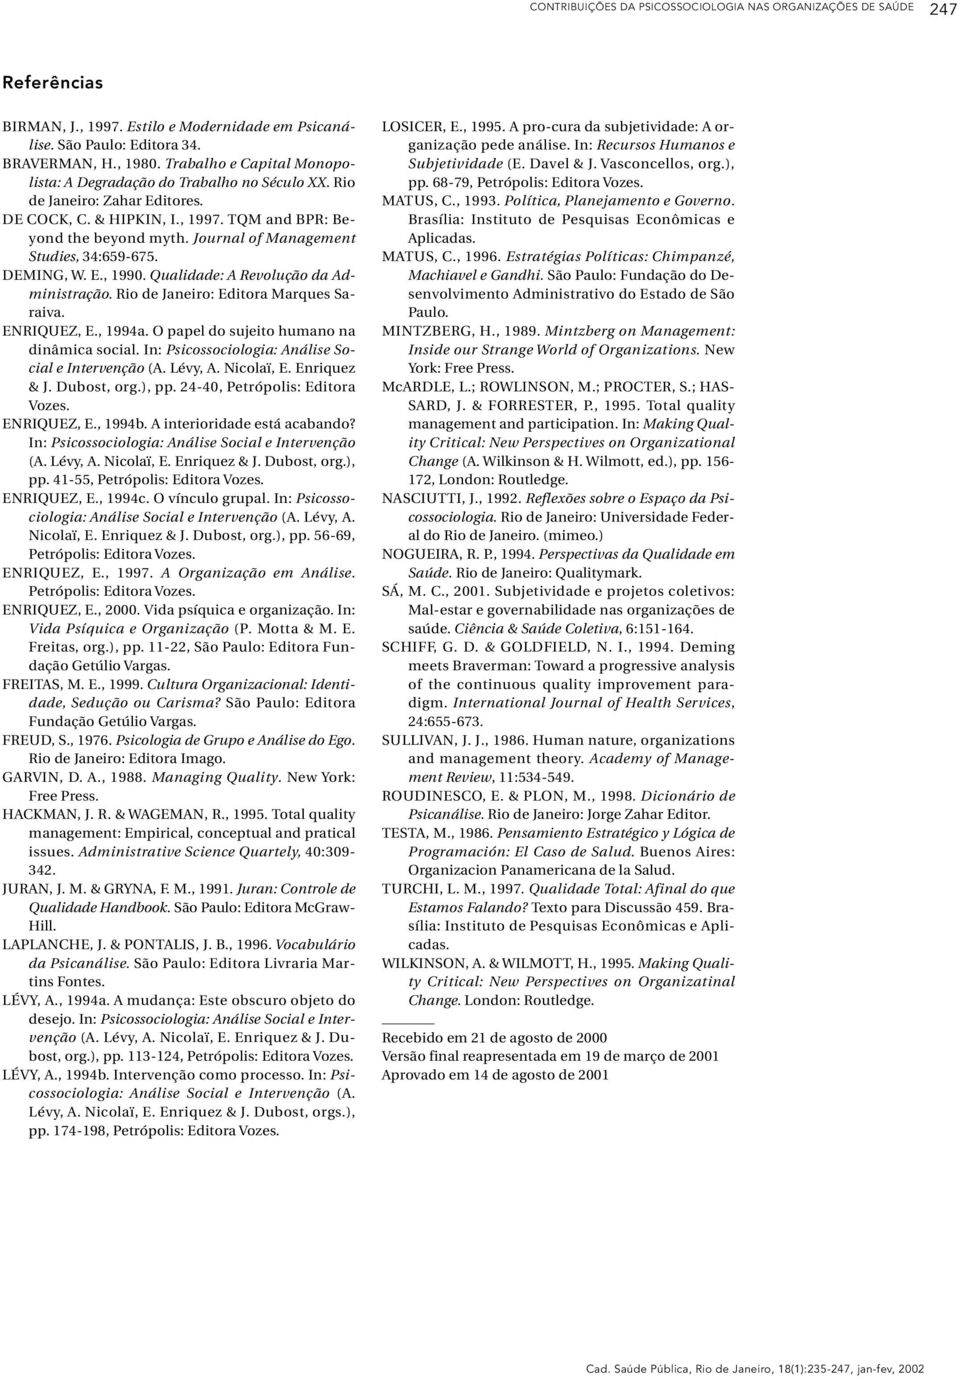 Journal of Management Studies, 34:659-675. DEMING, W. E., 1990. Qualidade: A Revolução da Administração. Rio de Janeiro: Editora Marques Saraiva. ENRIQUEZ, E., 1994a.